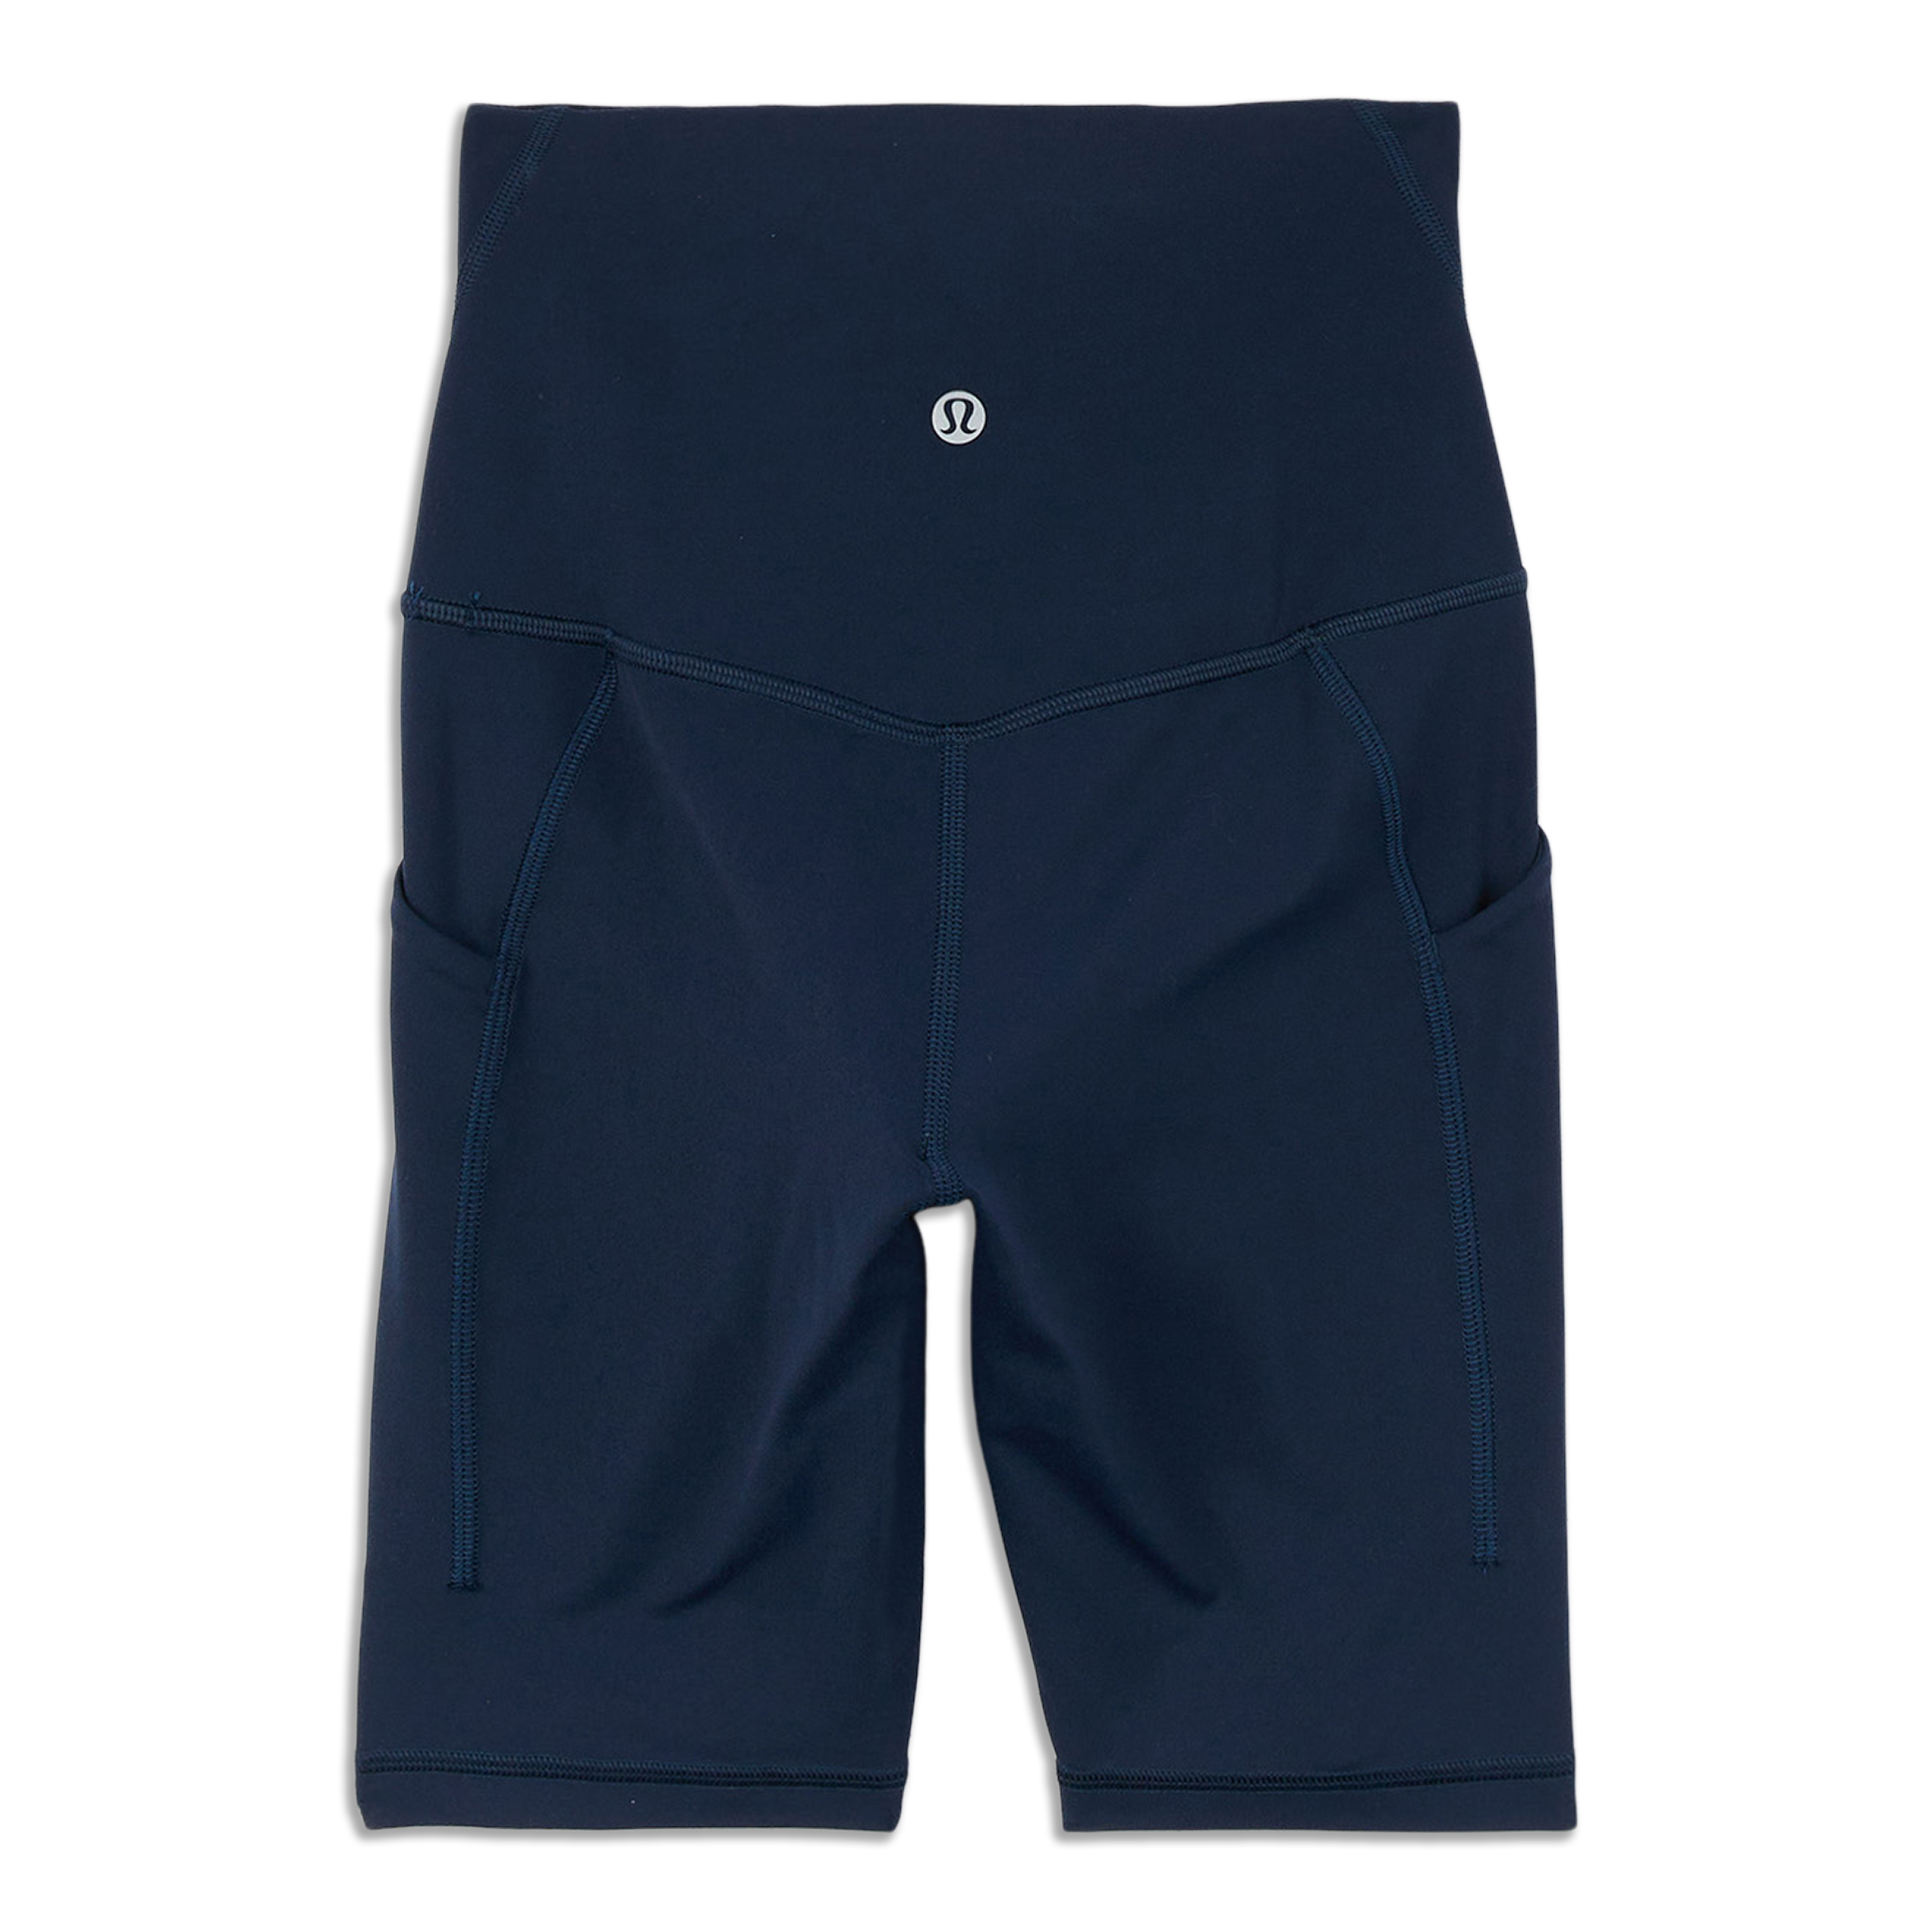 lululemon shorts bundle for tasha - Athletic apparel